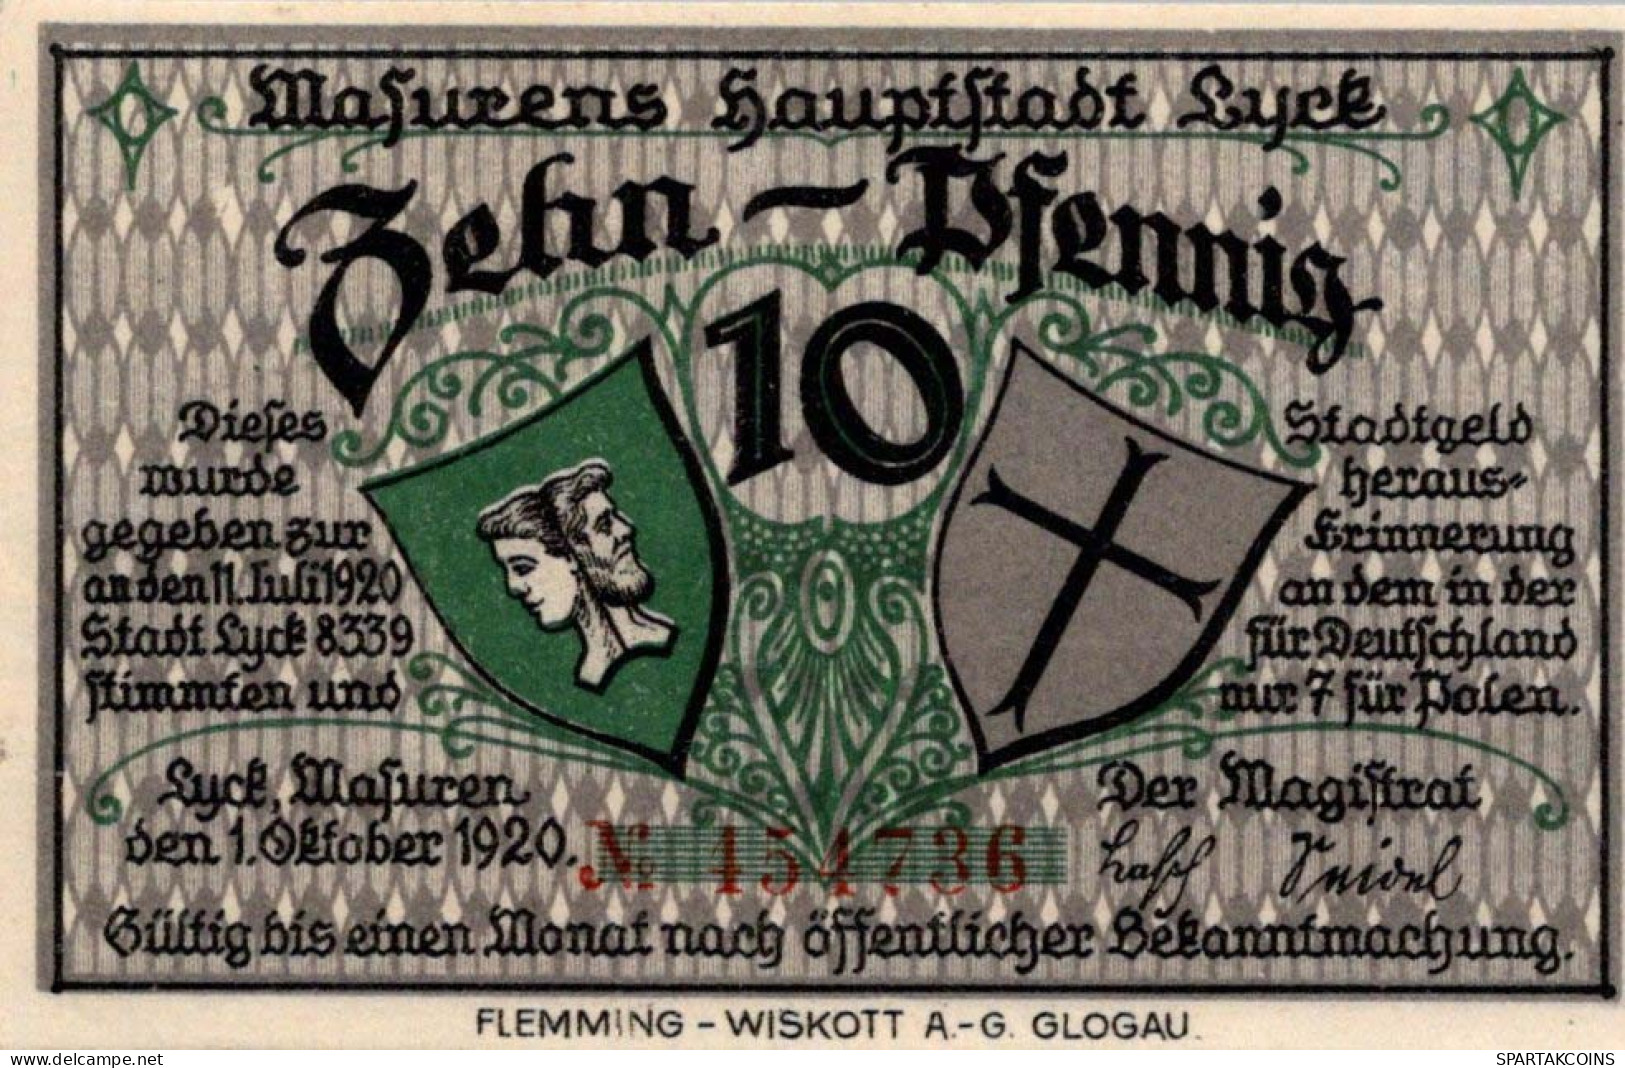 10 PFENNIG 1920 Stadt LYCK East PRUSSLAND UNC DEUTSCHLAND Notgeld Banknote #PC697 - [11] Local Banknote Issues